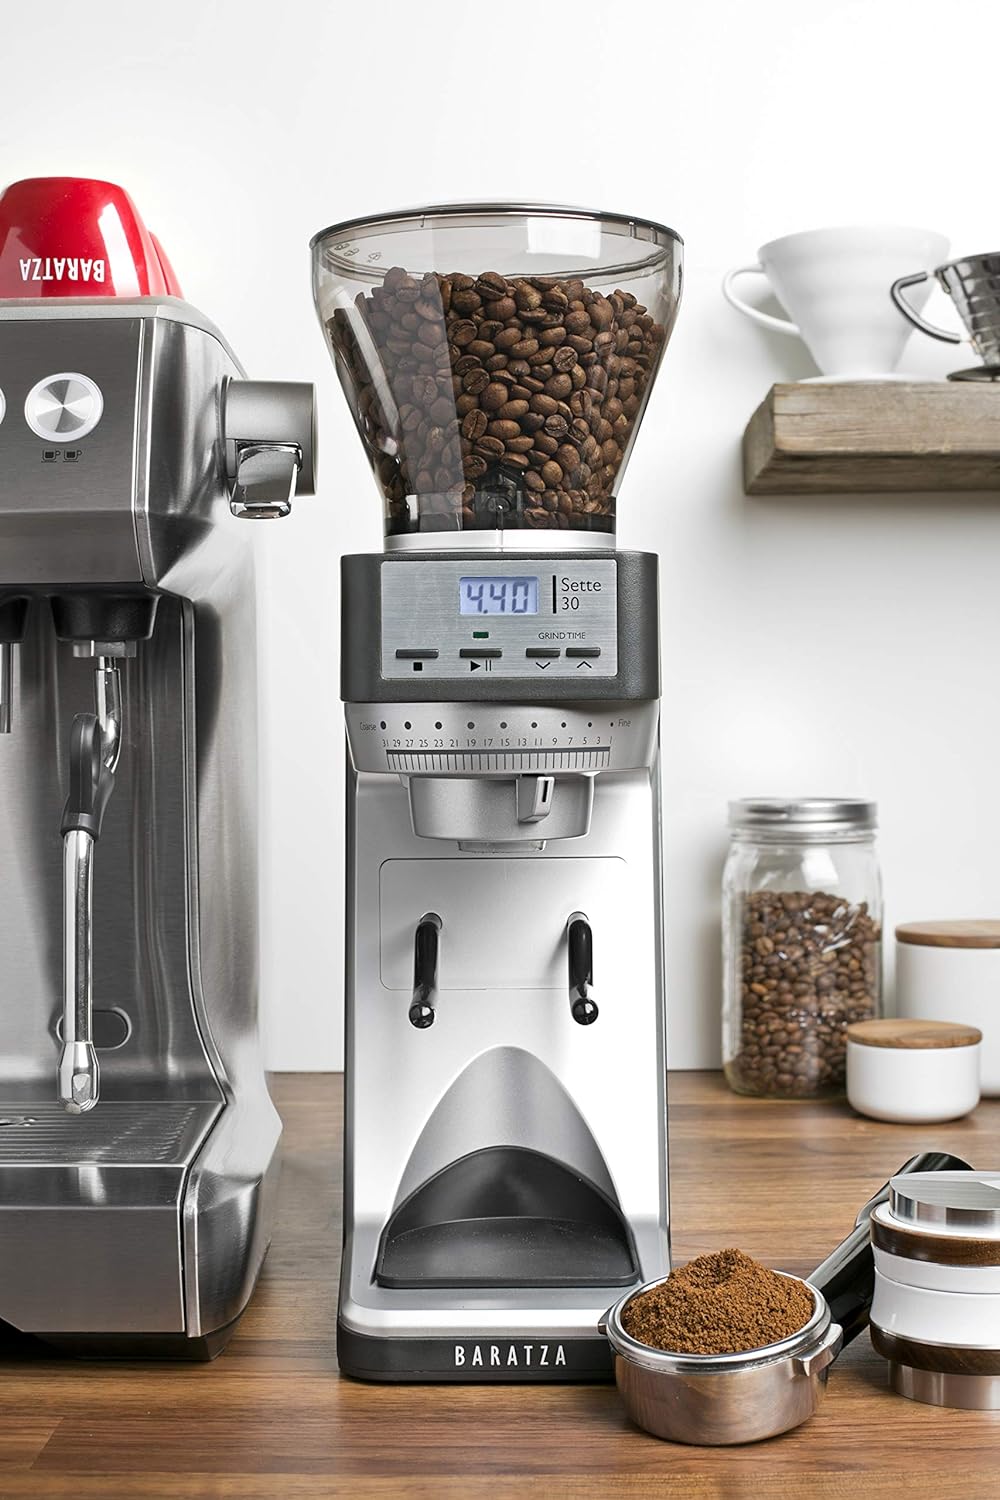 Breville Bambino Espresso Machine – Vaneli's Handcrafted Coffee